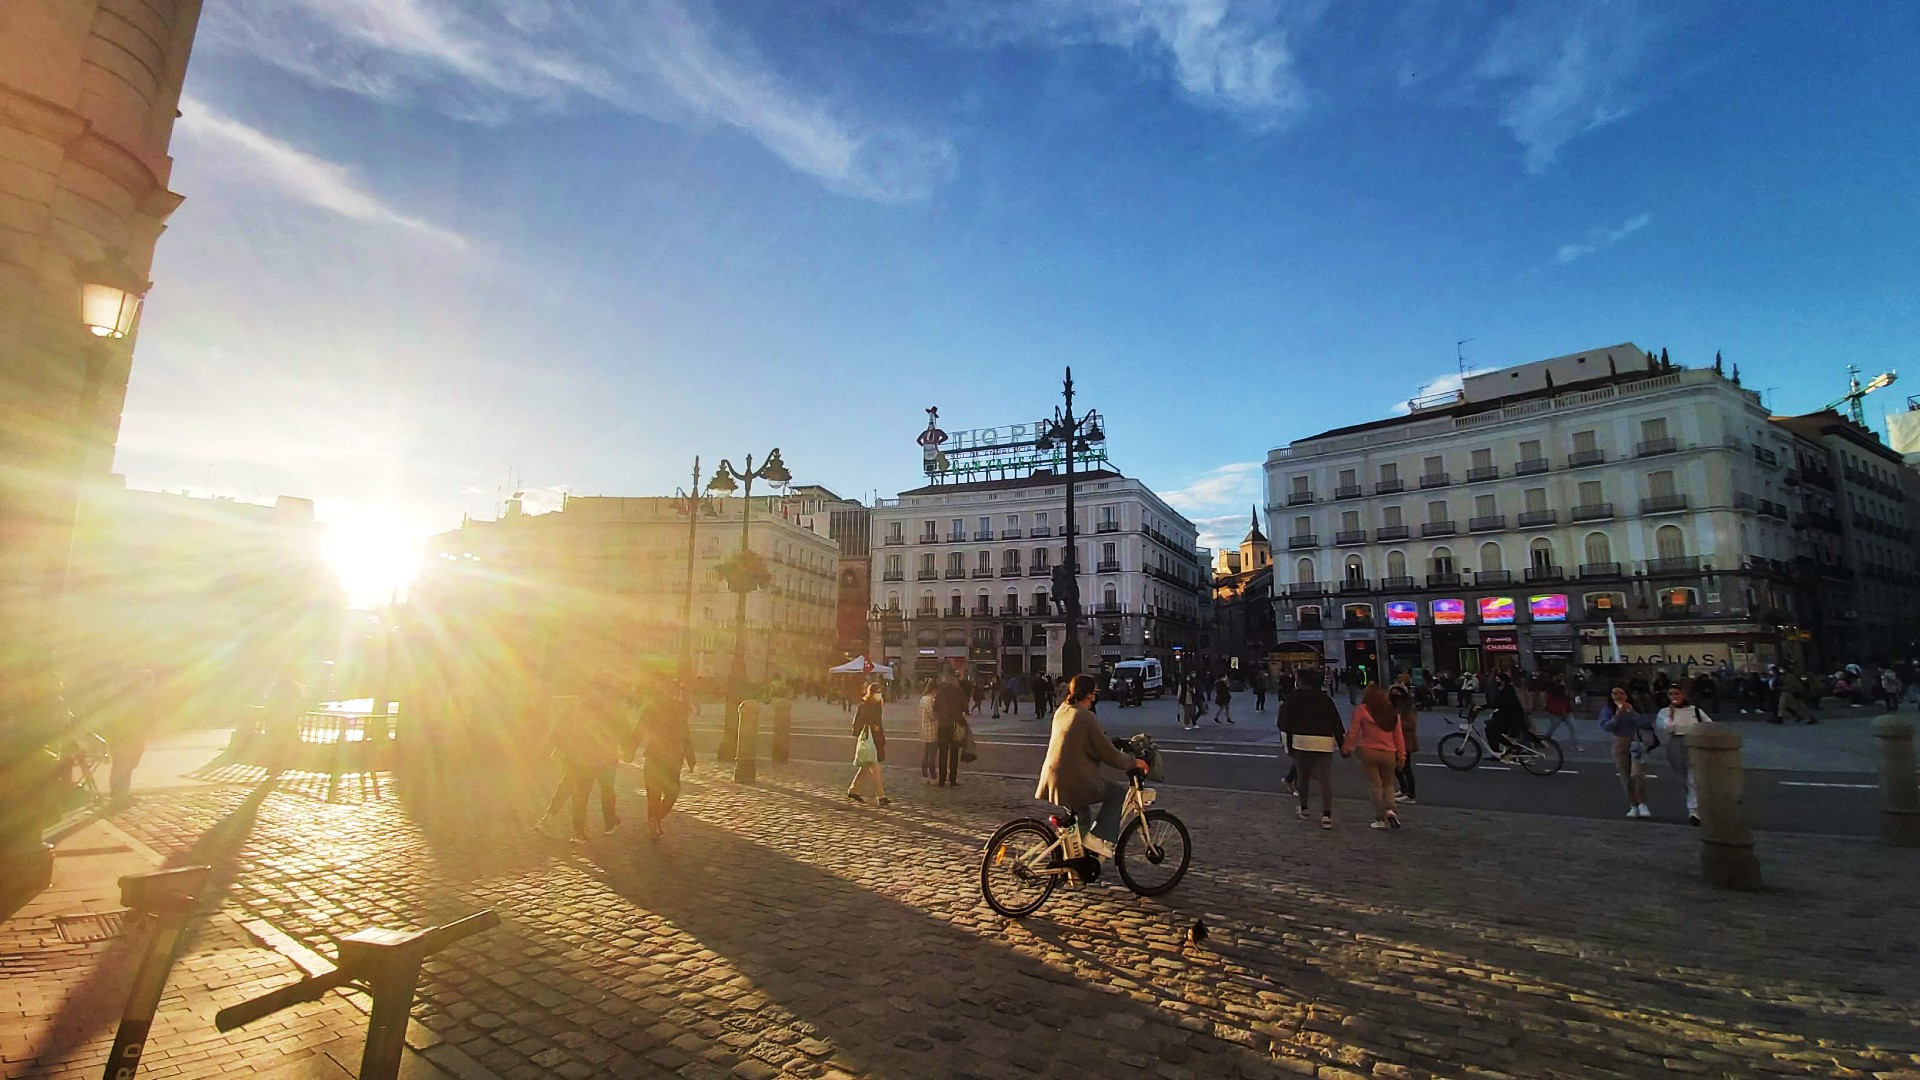 Il quartiere più piccolo del centro di Madrid, Sol è il fulcro storico, politico e commerciale della capitale spagnola.